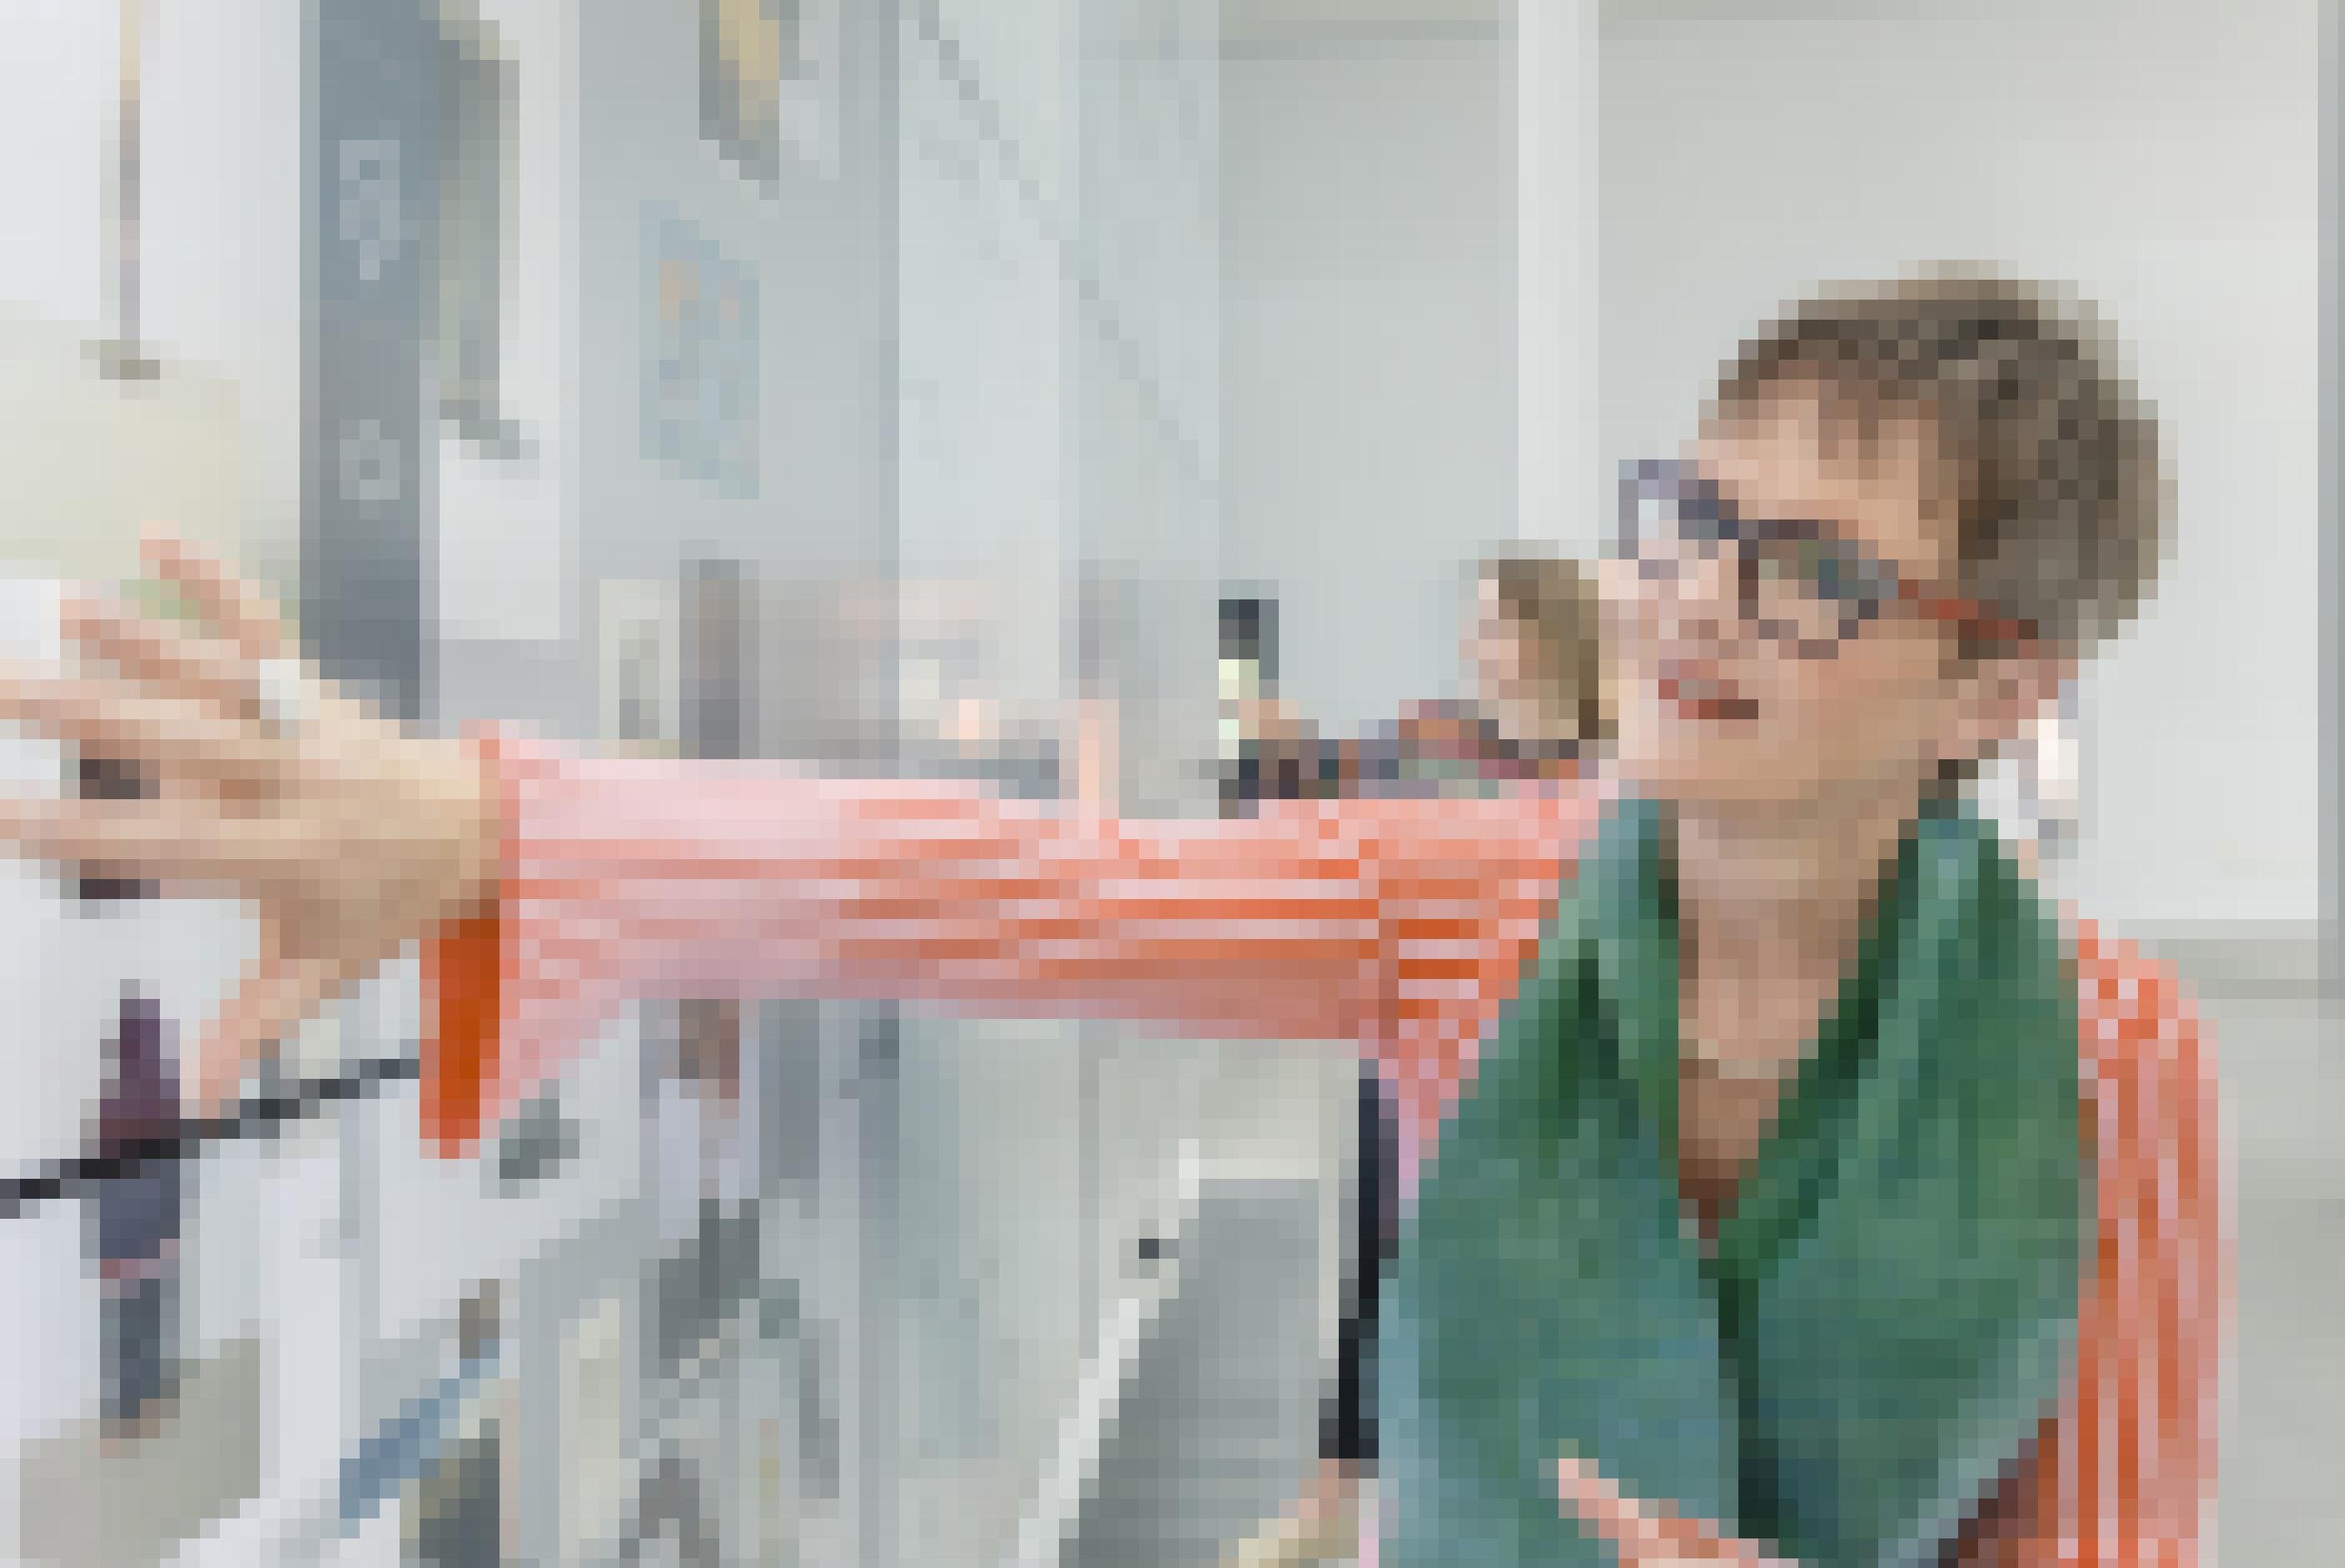 Eine Frau mit auffälliger Brille und grünem Schal bedient einen riesigen, an der Wand hängenden Touchscreen.